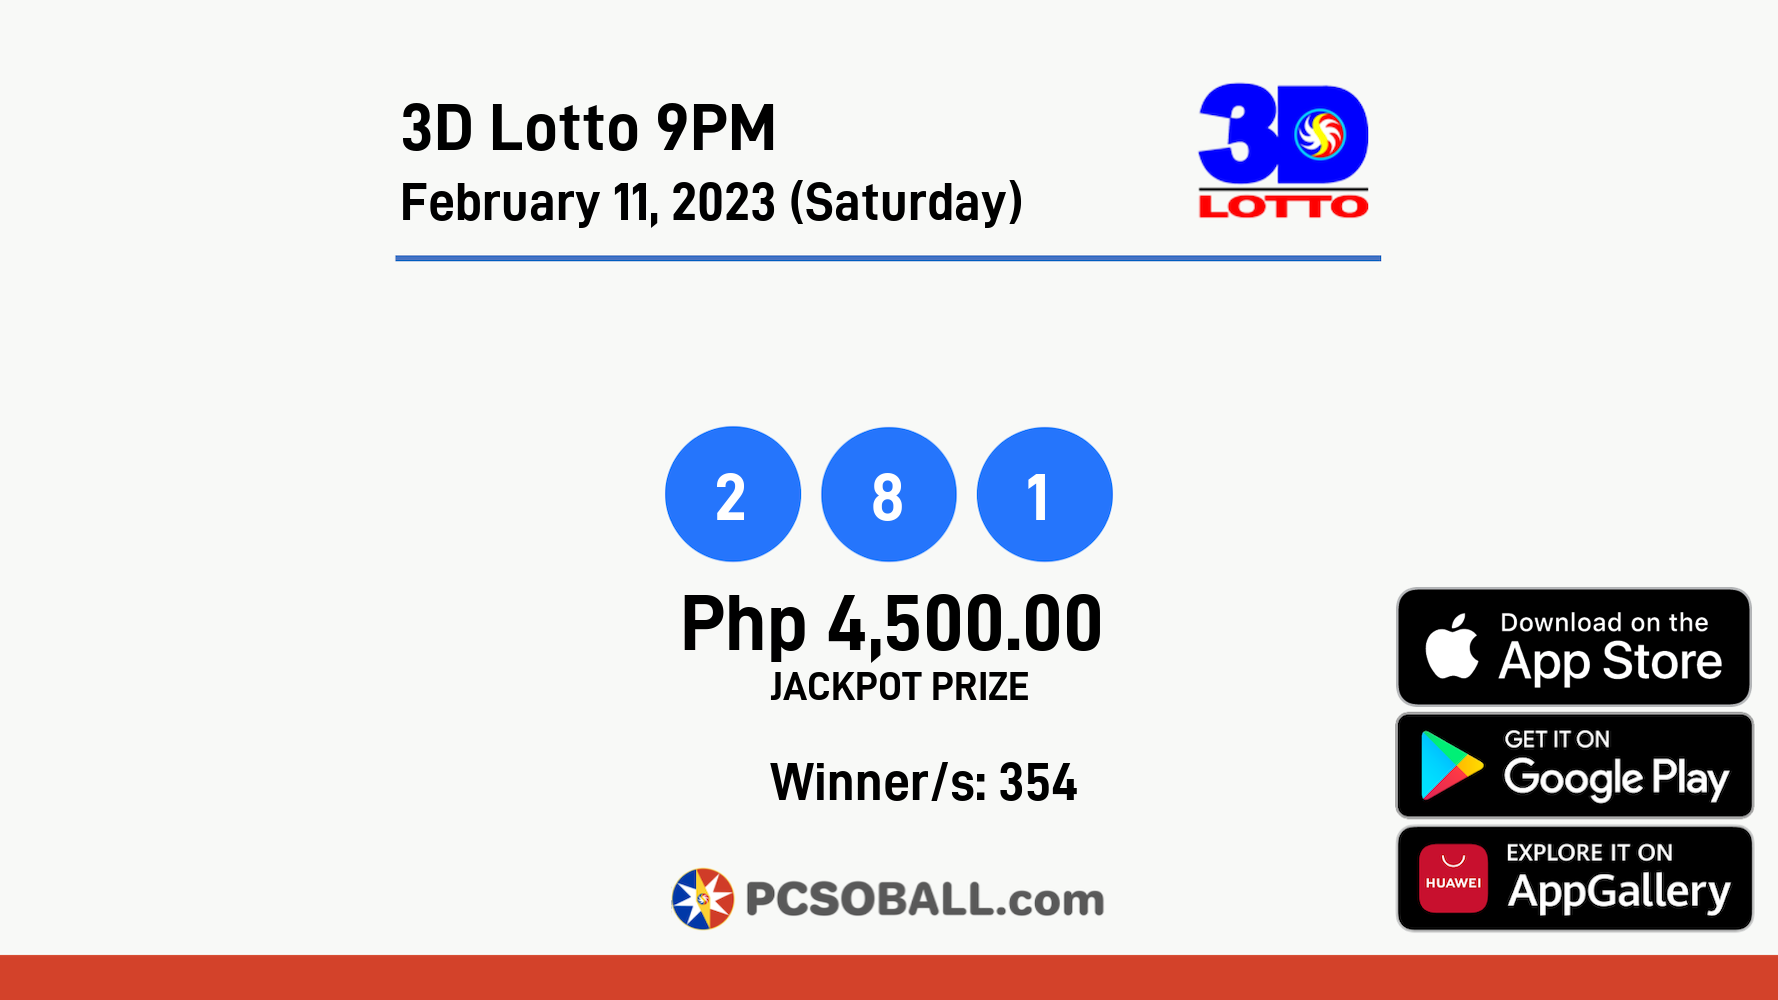 3D Lotto 9PM February 11, 2023 (Saturday) Result